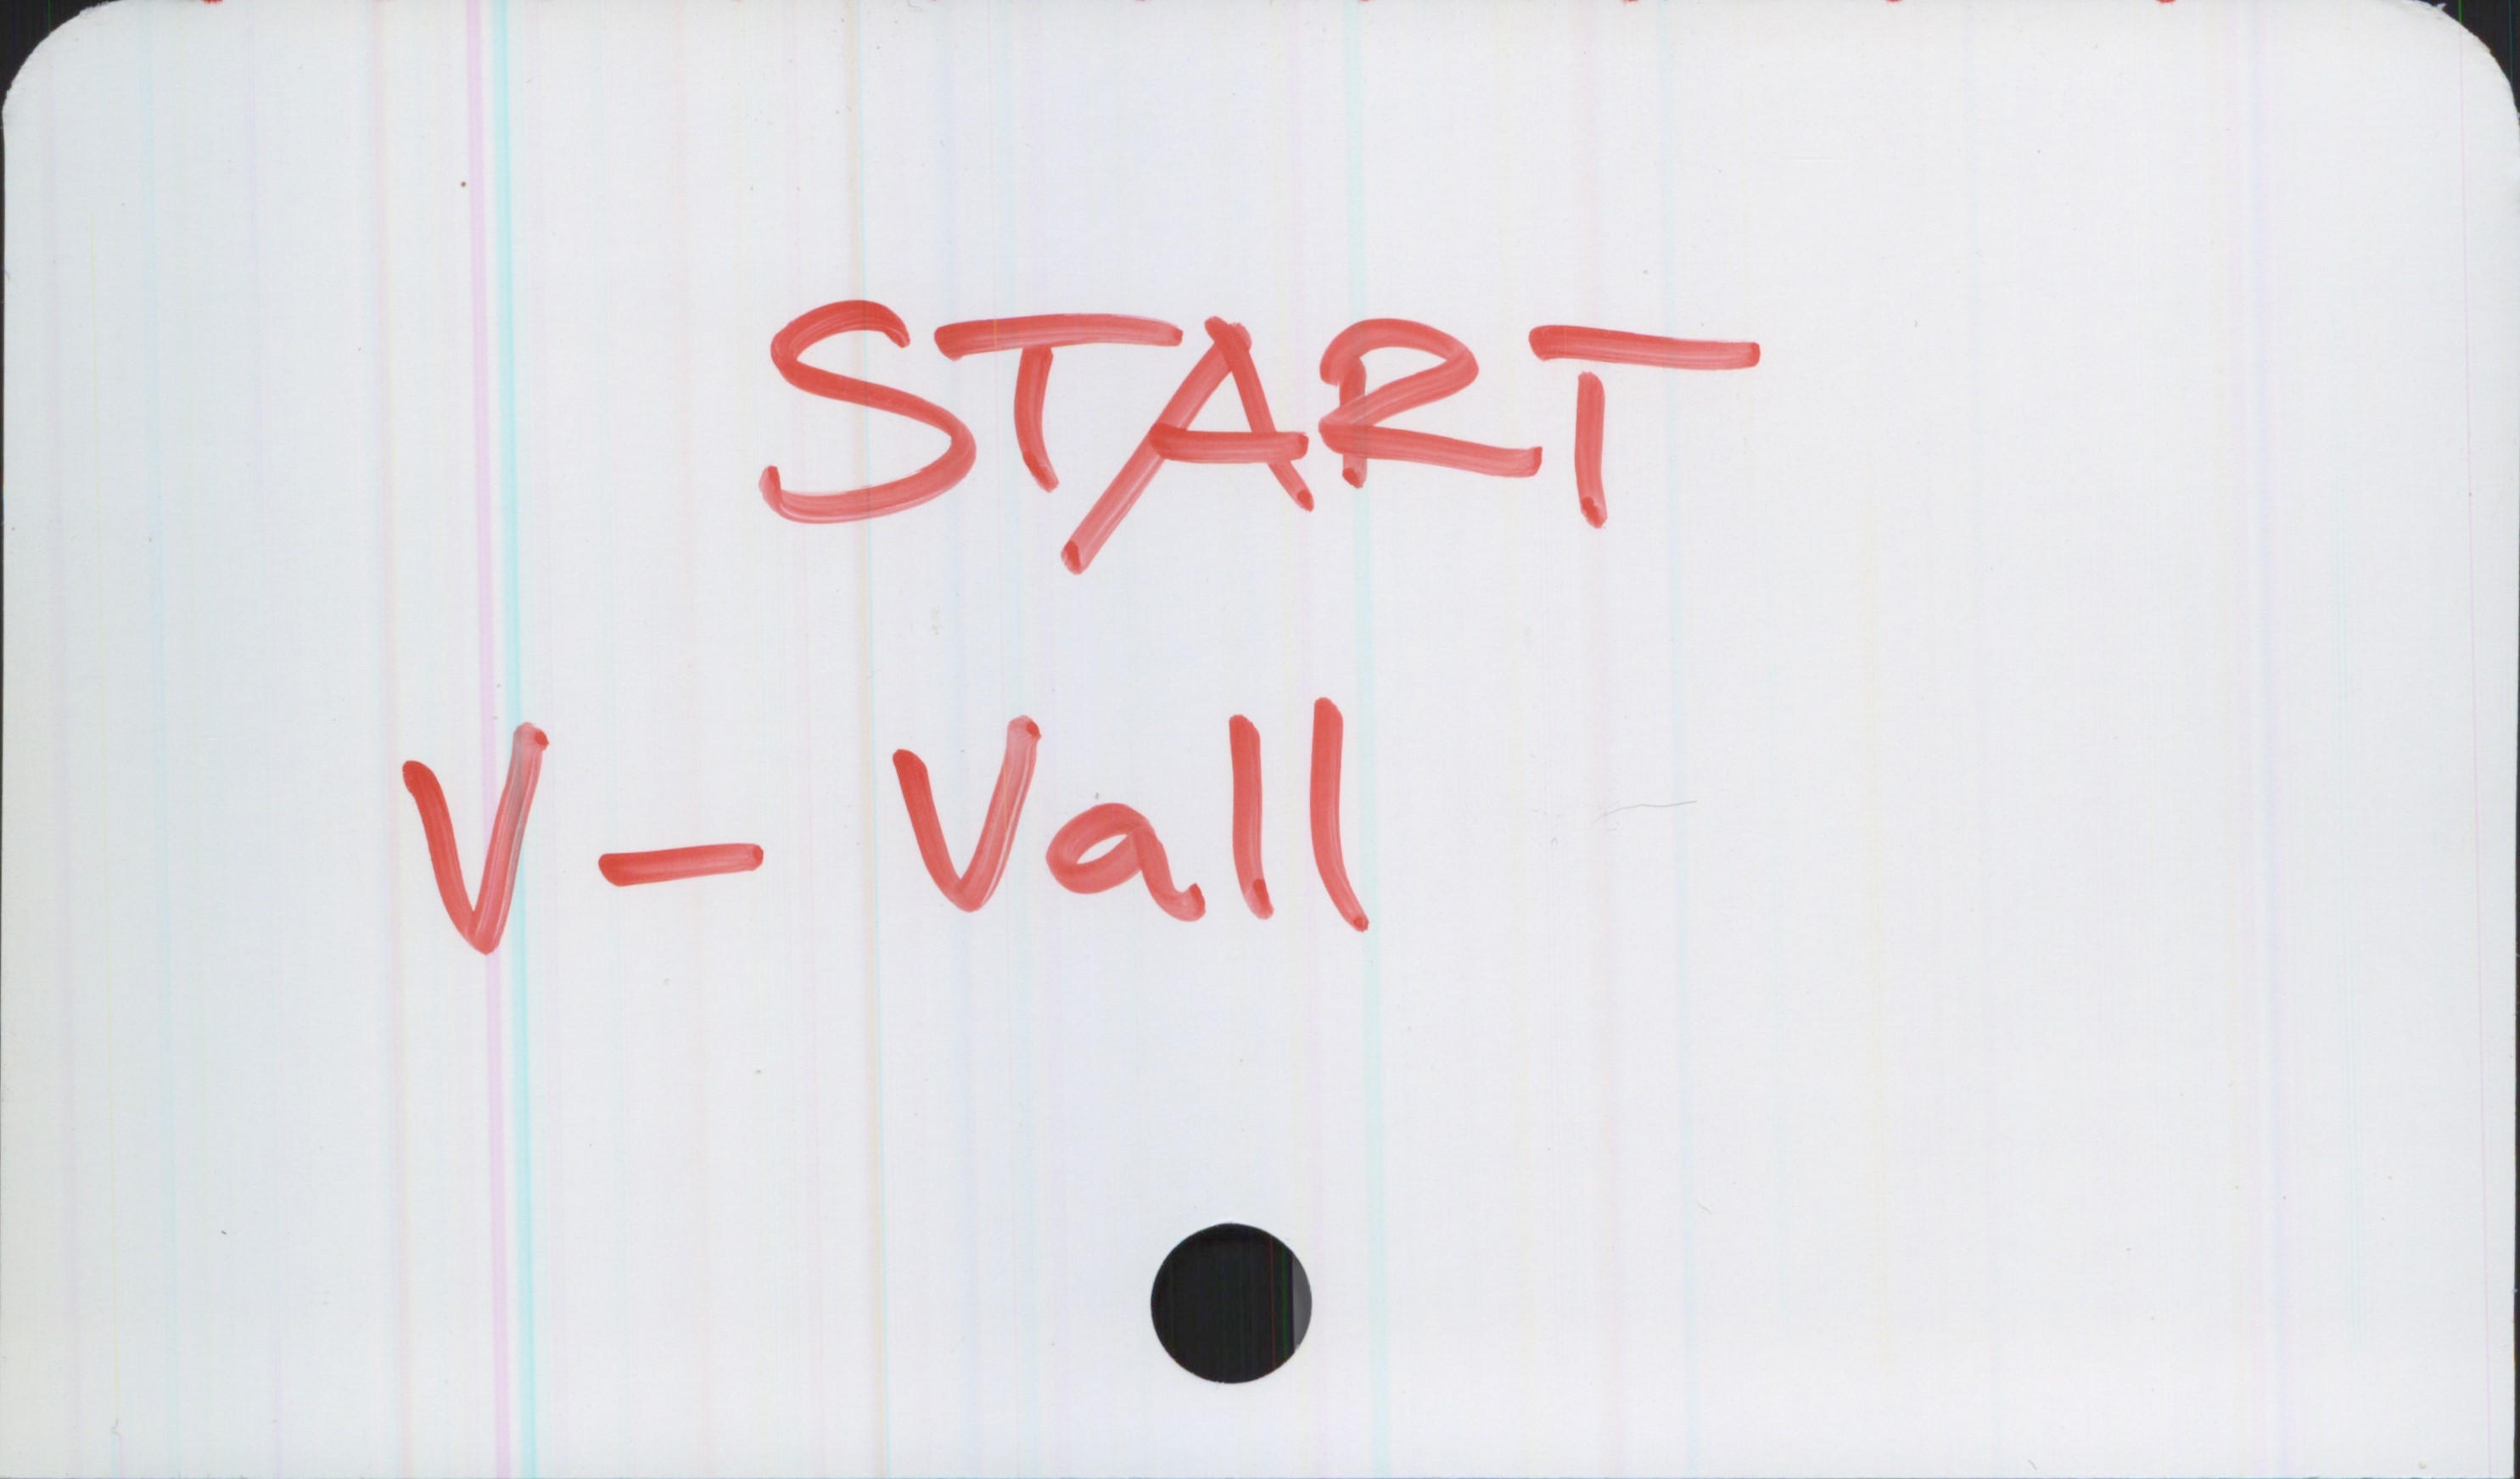  START
V- Vall
_ .

